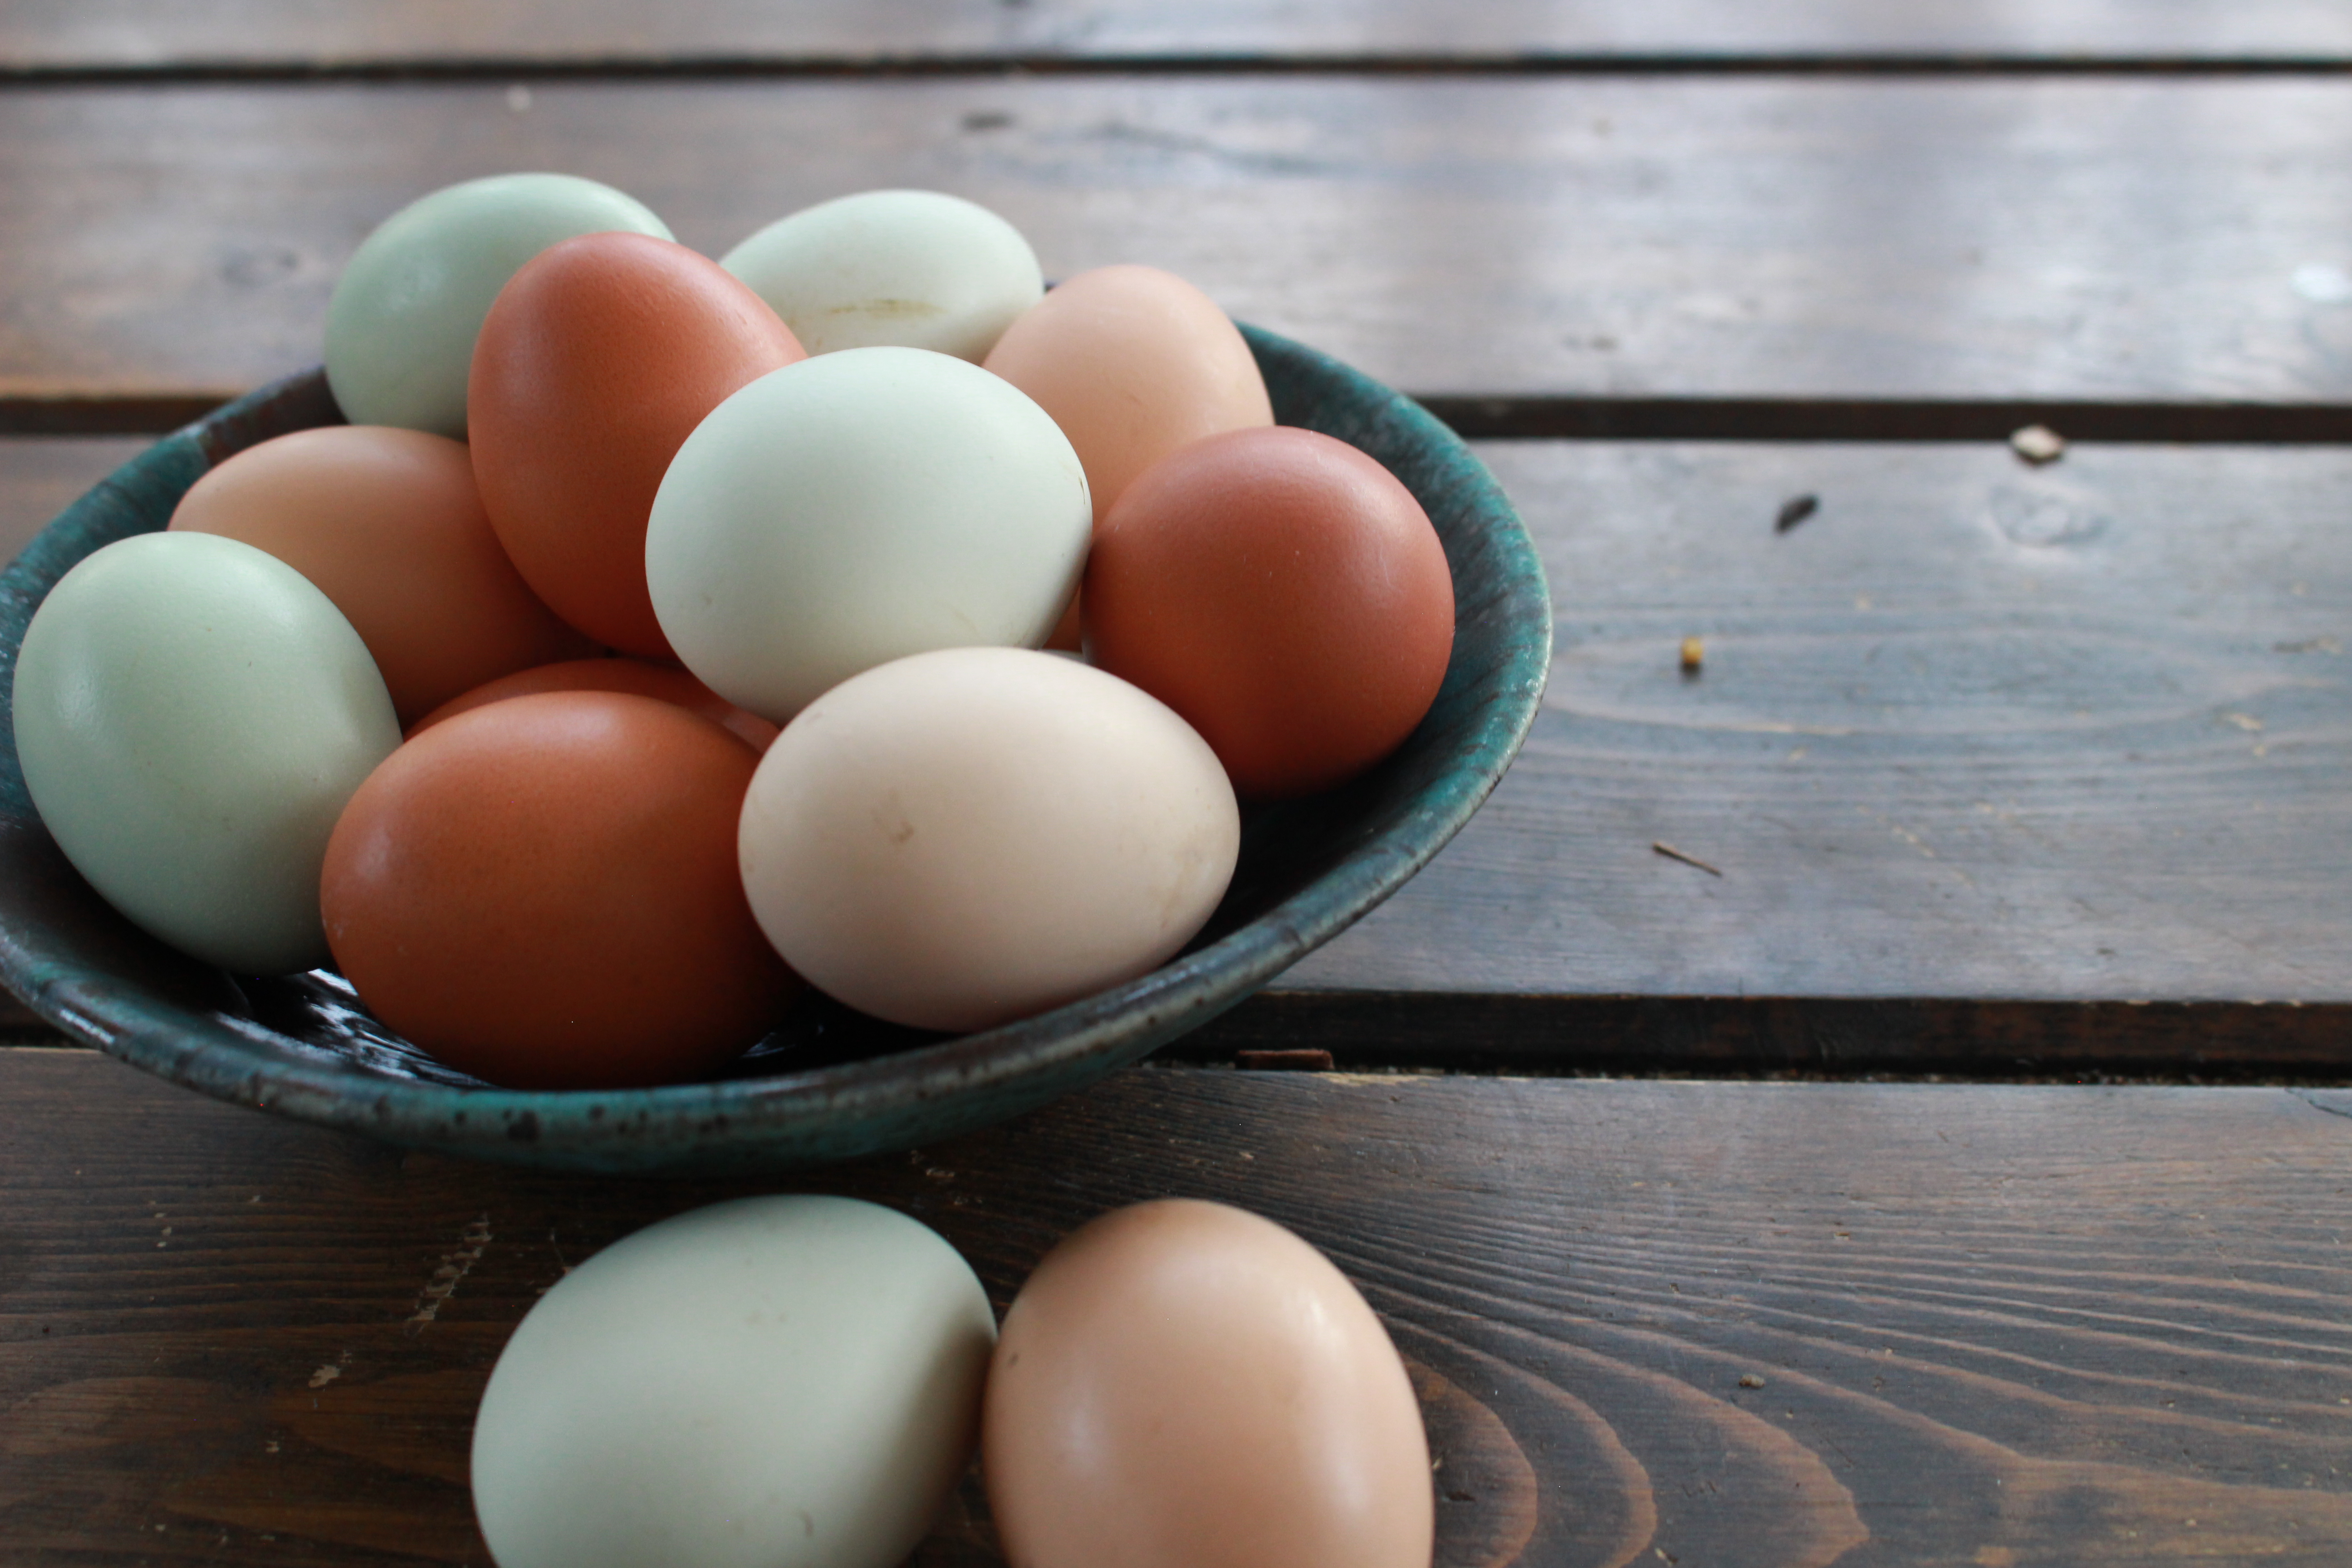 pasture raised eggs in a ceramic bowl